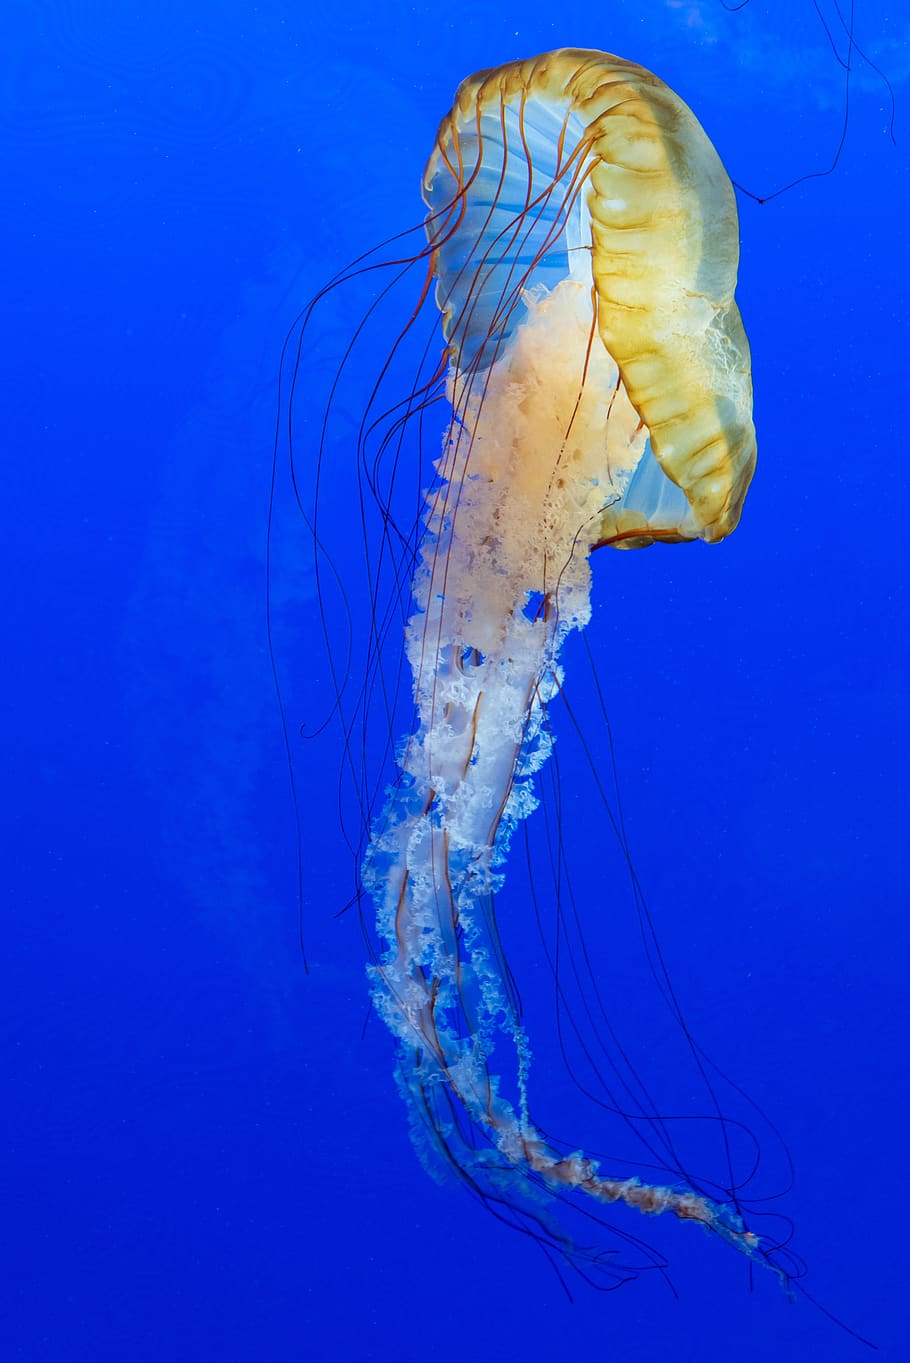 azul, medusa, animal, criatura, oscuro, profundo, pescado, flotador, resplandor, brillante